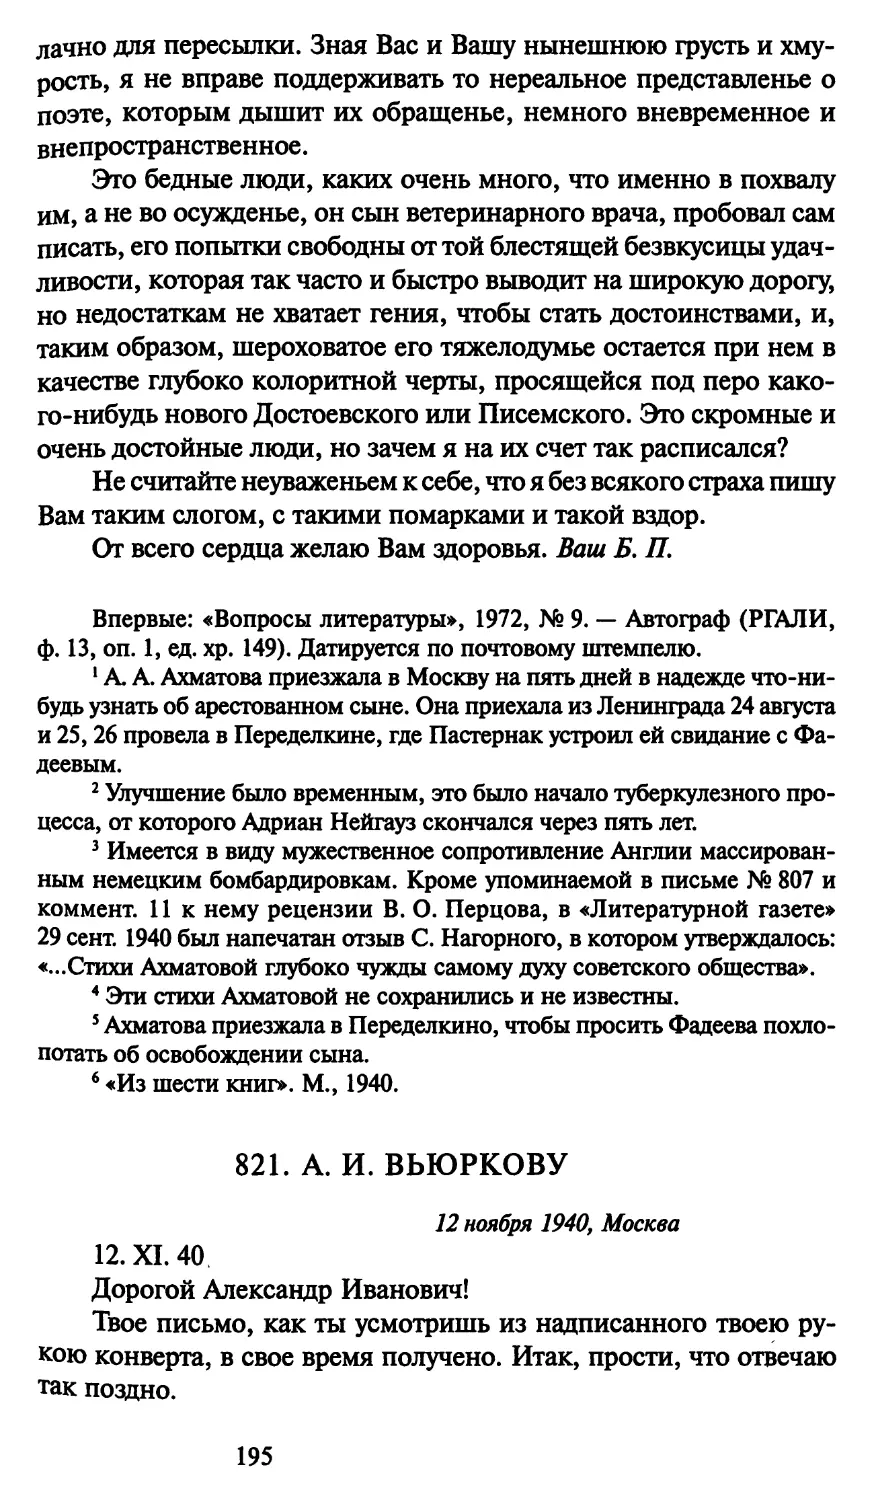 821. А. И. Вьюркову 12 ноября 1940